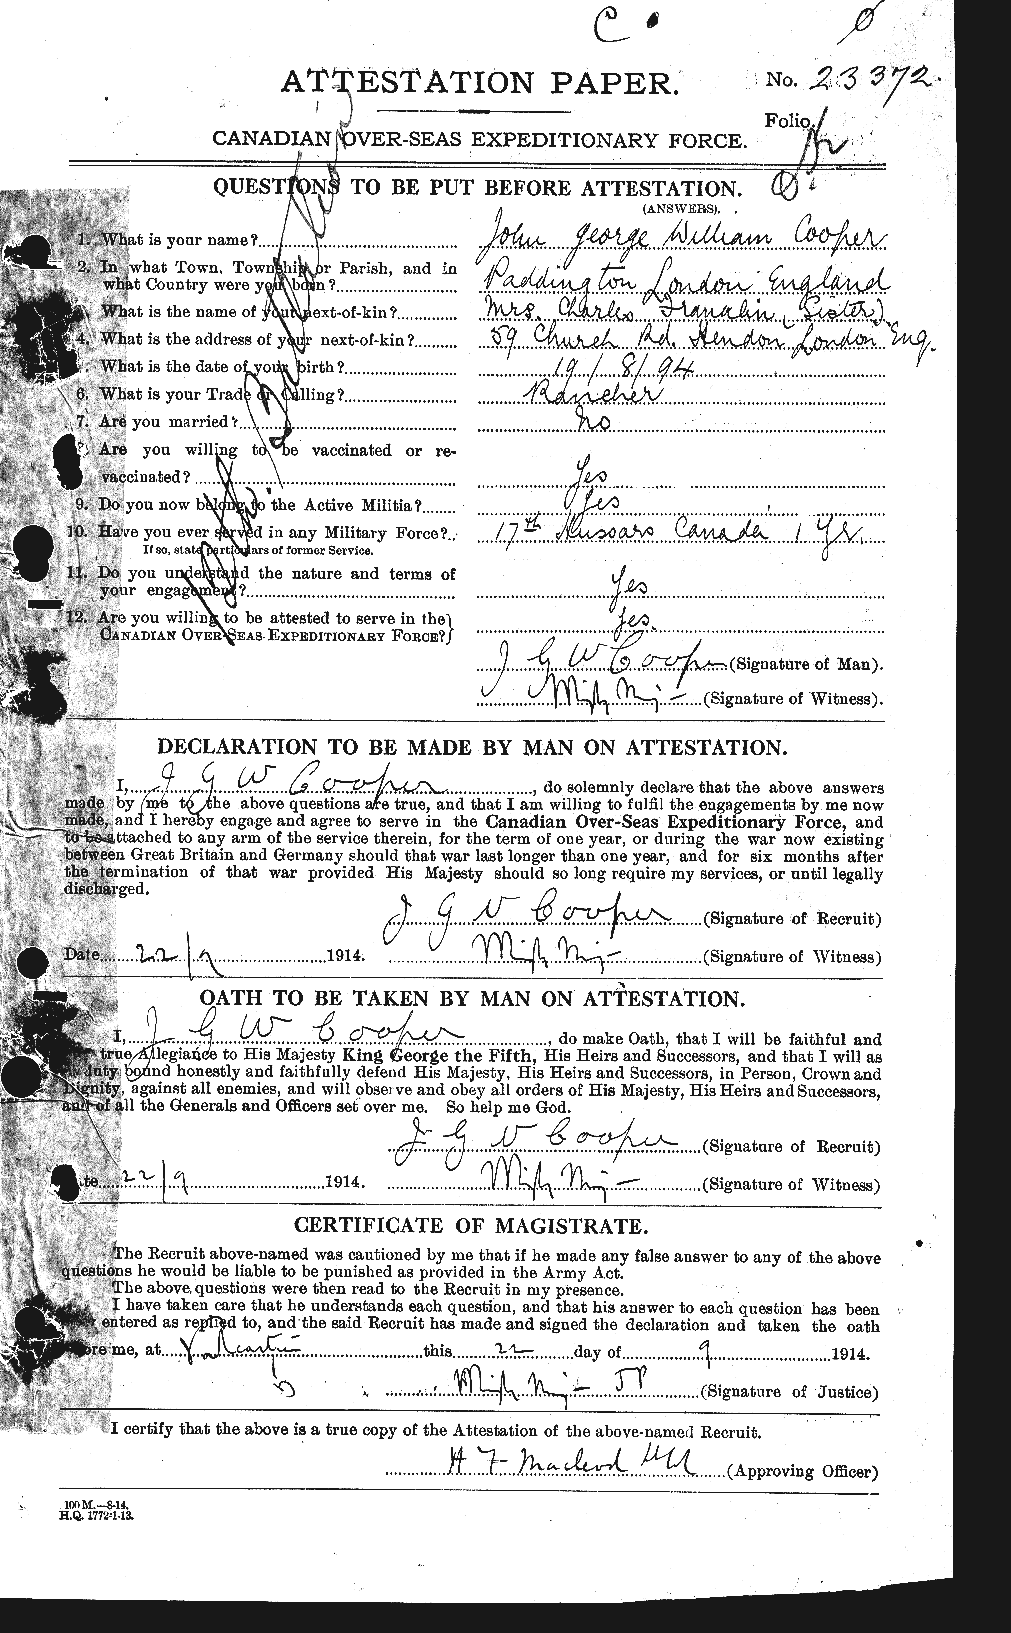 Dossiers du Personnel de la Première Guerre mondiale - CEC 056027a